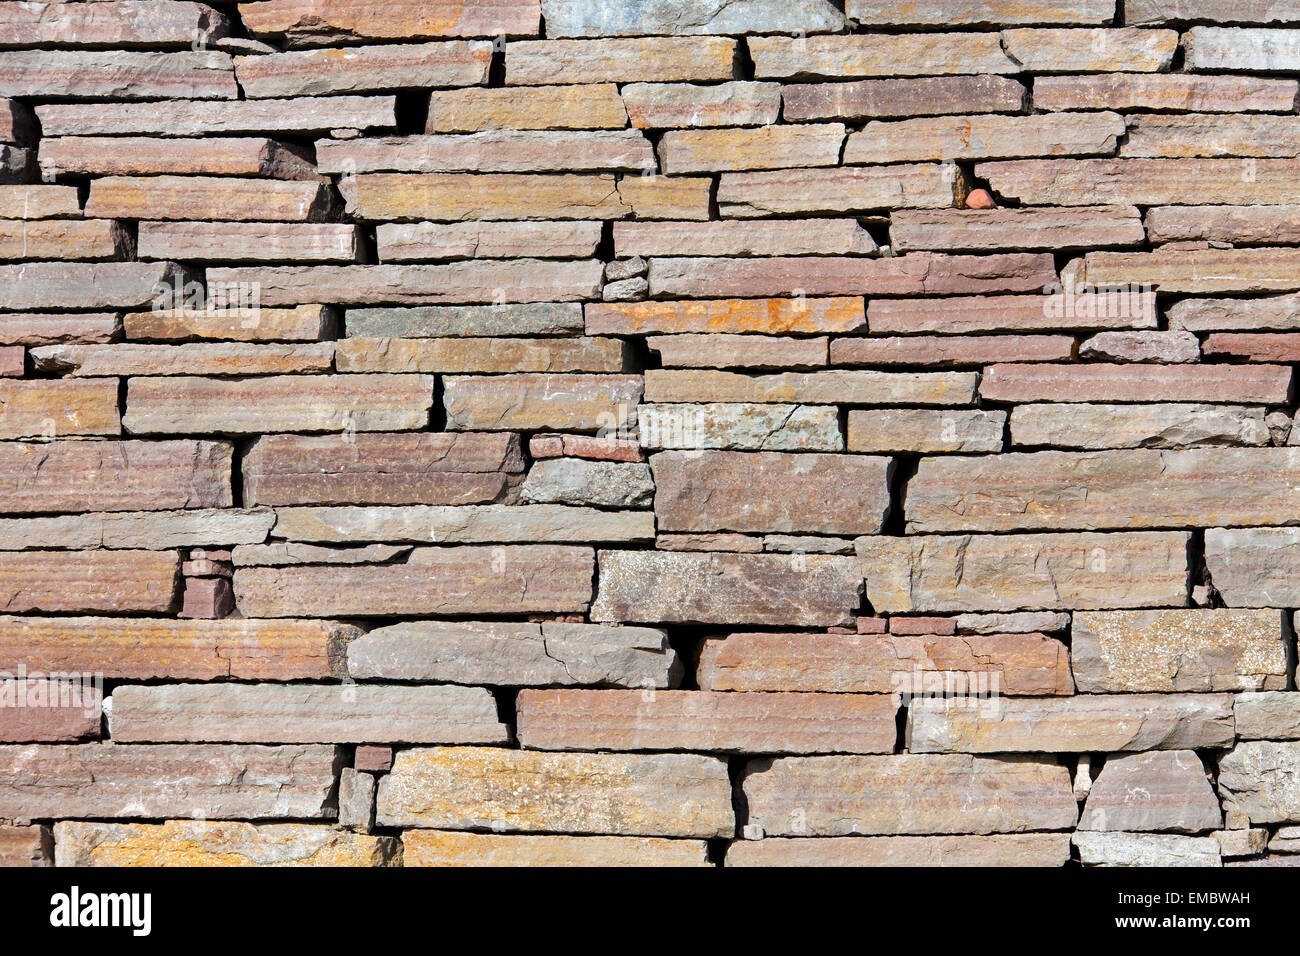 Mur en pierre sèche avec des pierres imbriquées Eketorp, château fort de l'âge du fer dans le sud-est de l'Öland, Suède Banque D'Images